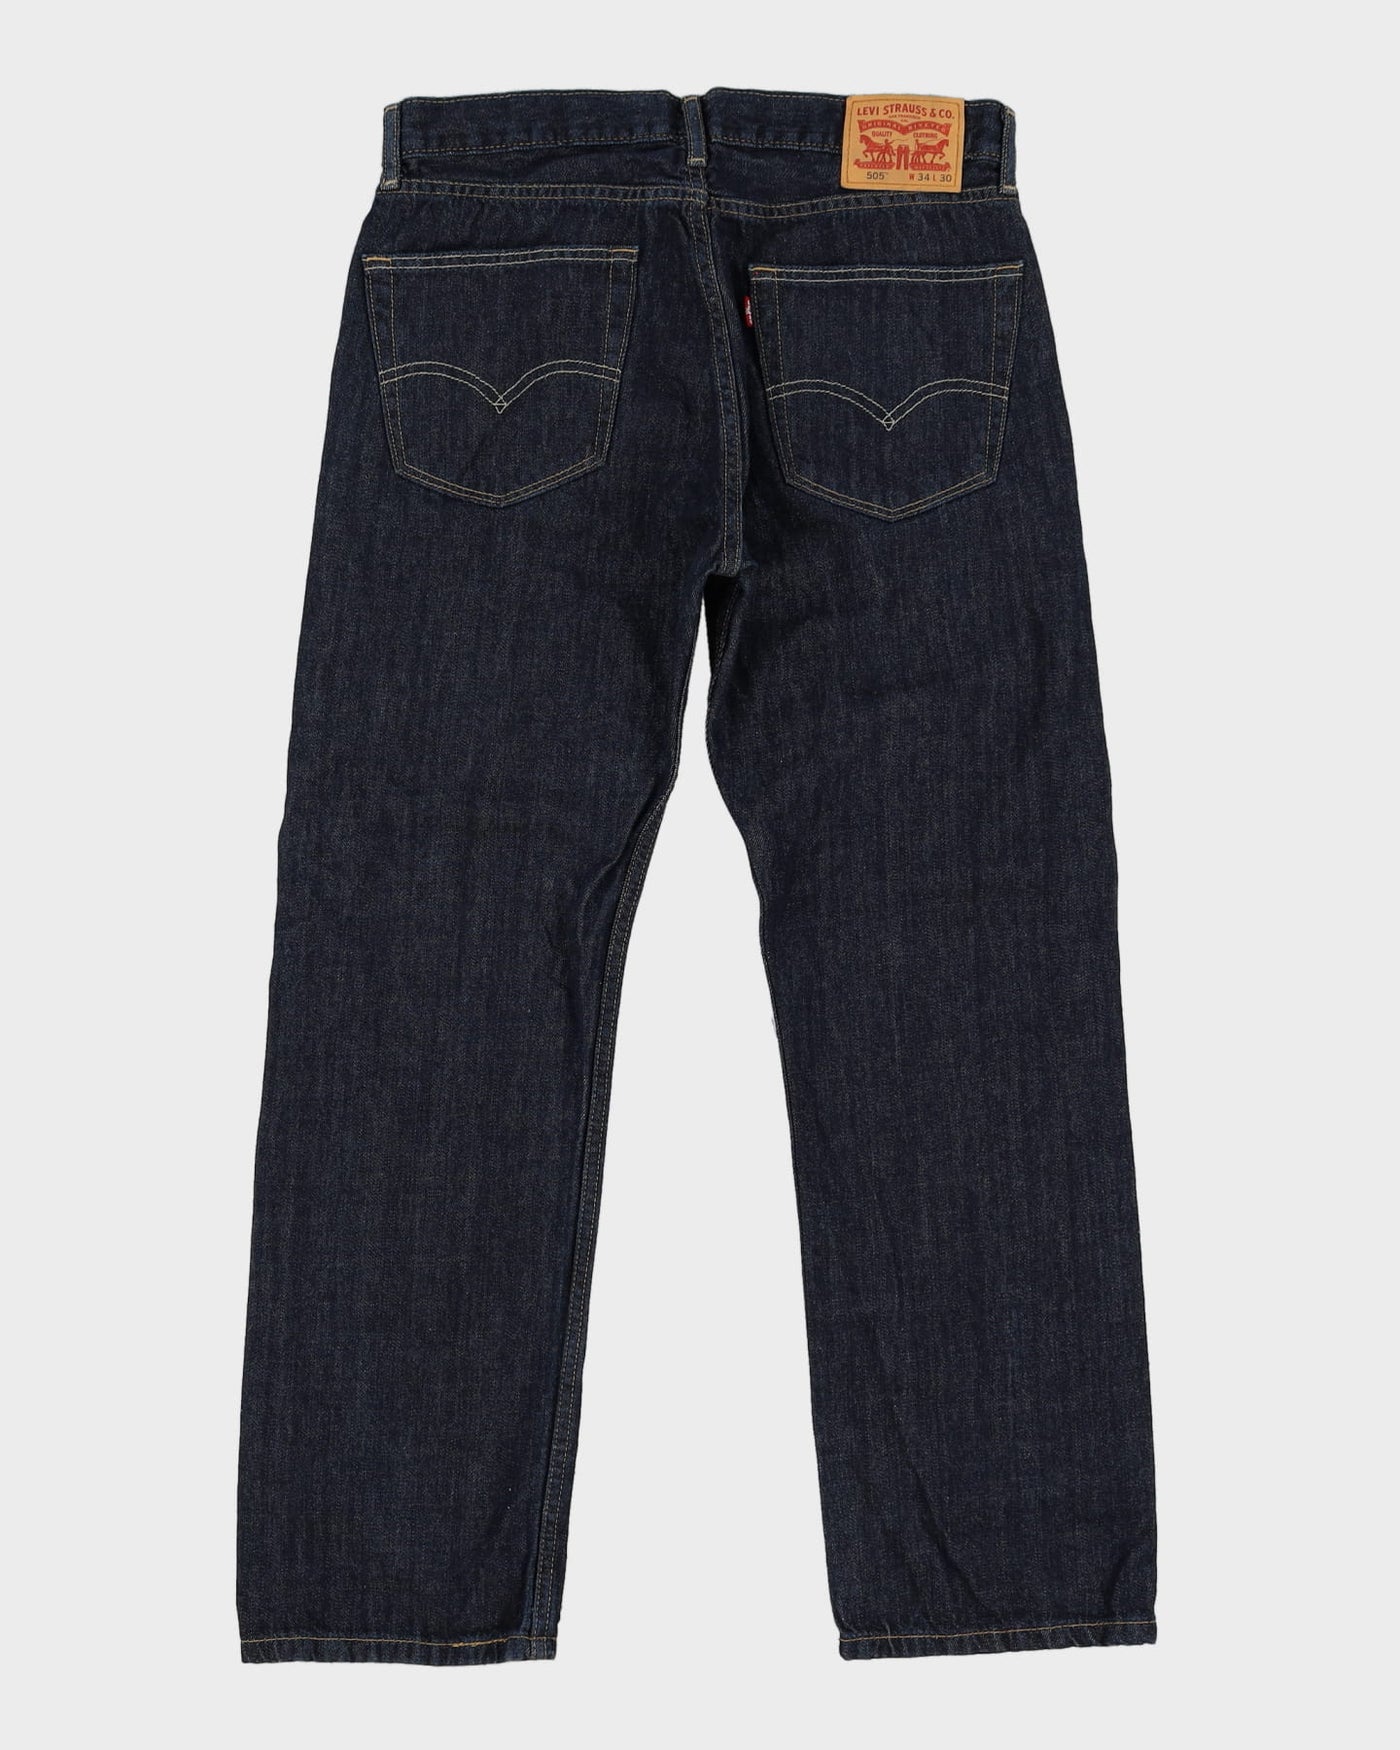 Levi's 505 Blue Dark Wash Jeans - W34 L30